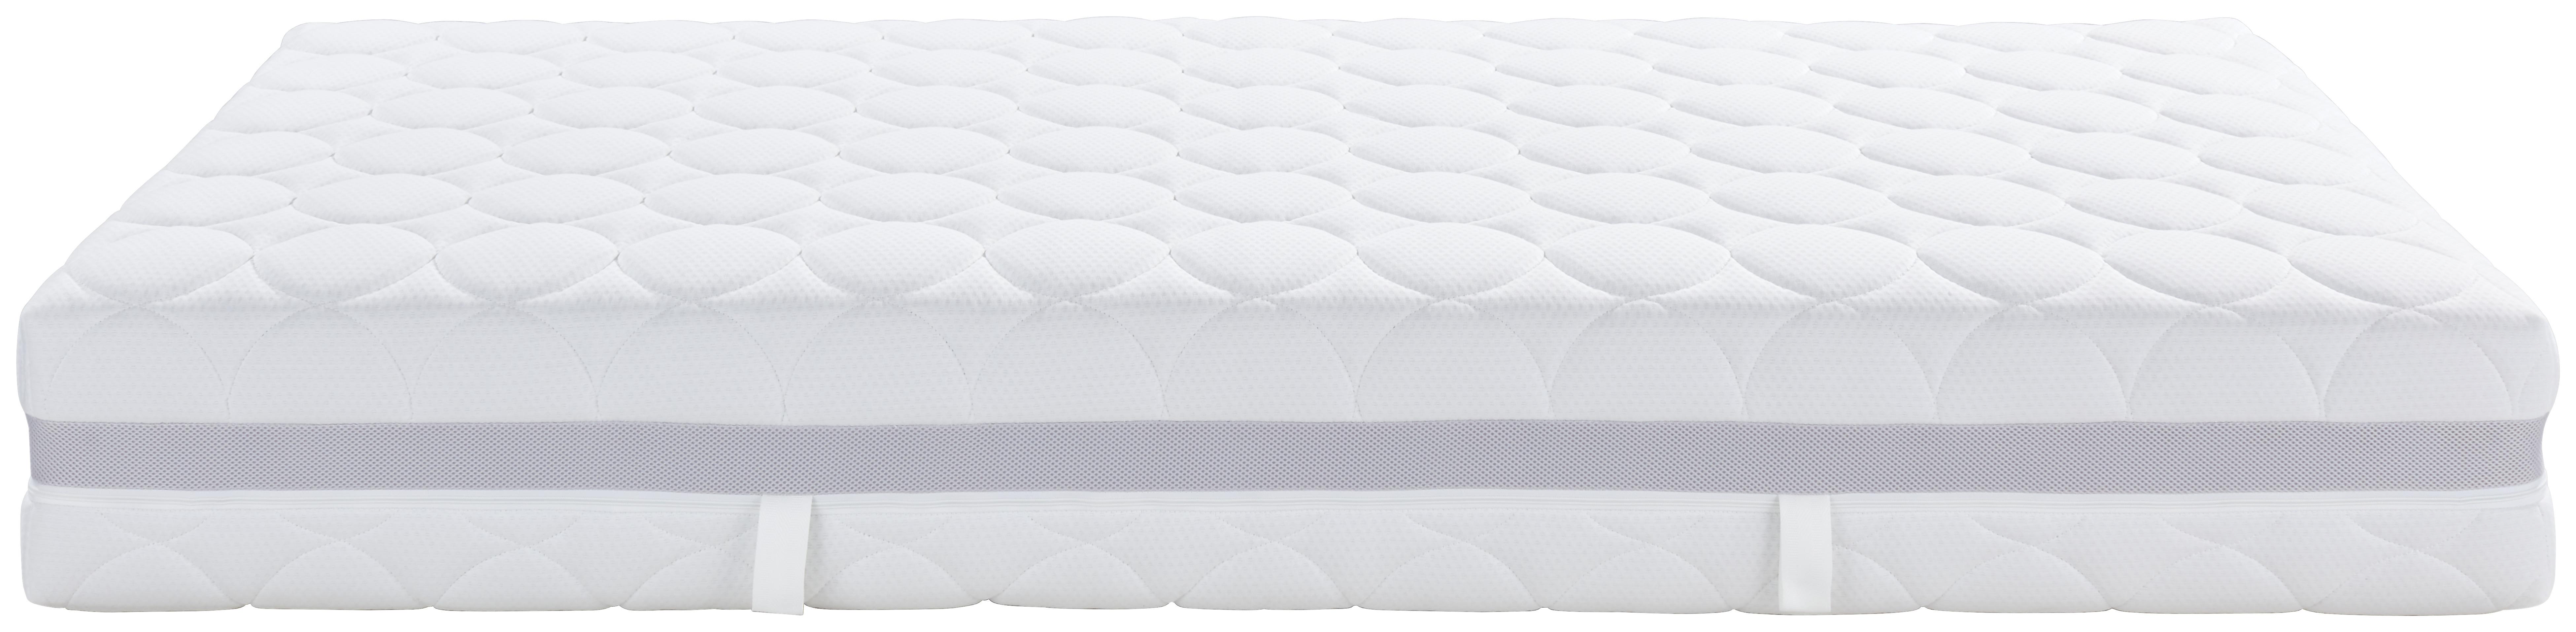 Komfortschaummatratze Silvy Deluxe H3/H4 - Weiß, Textil (90/200cm) - Primatex Deluxe